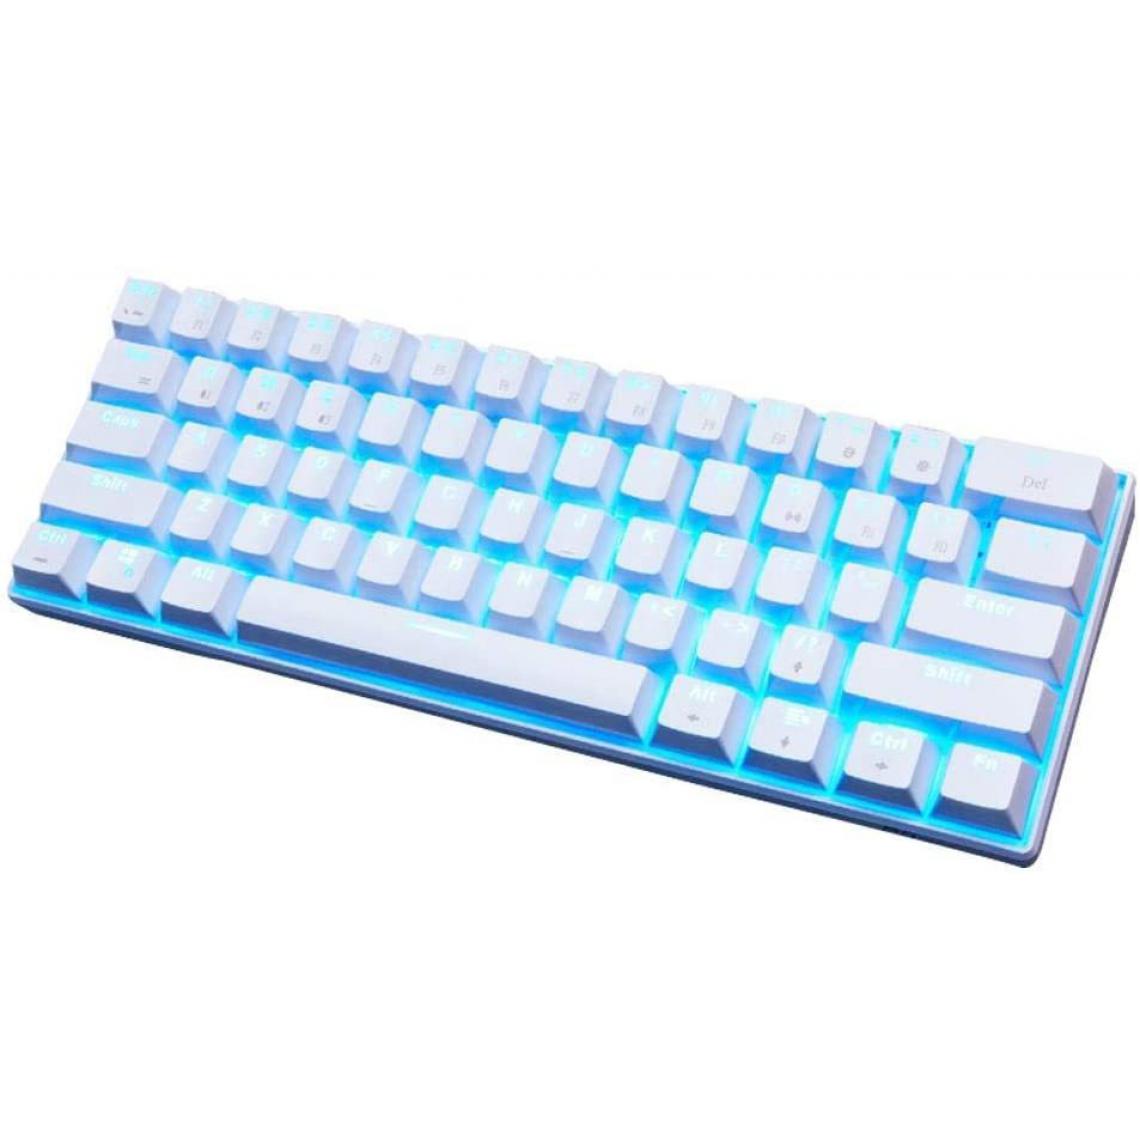 Chrono - Gaming Keyboard mécanique RK61 Filaire/sans Fil Bluetooth 61 Touches LED rétro-éclairé Design résistant aux déversements Adapté à l'utilisation de Travail et Tous Les Jours Compatible avec IO(blanc) - Clavier